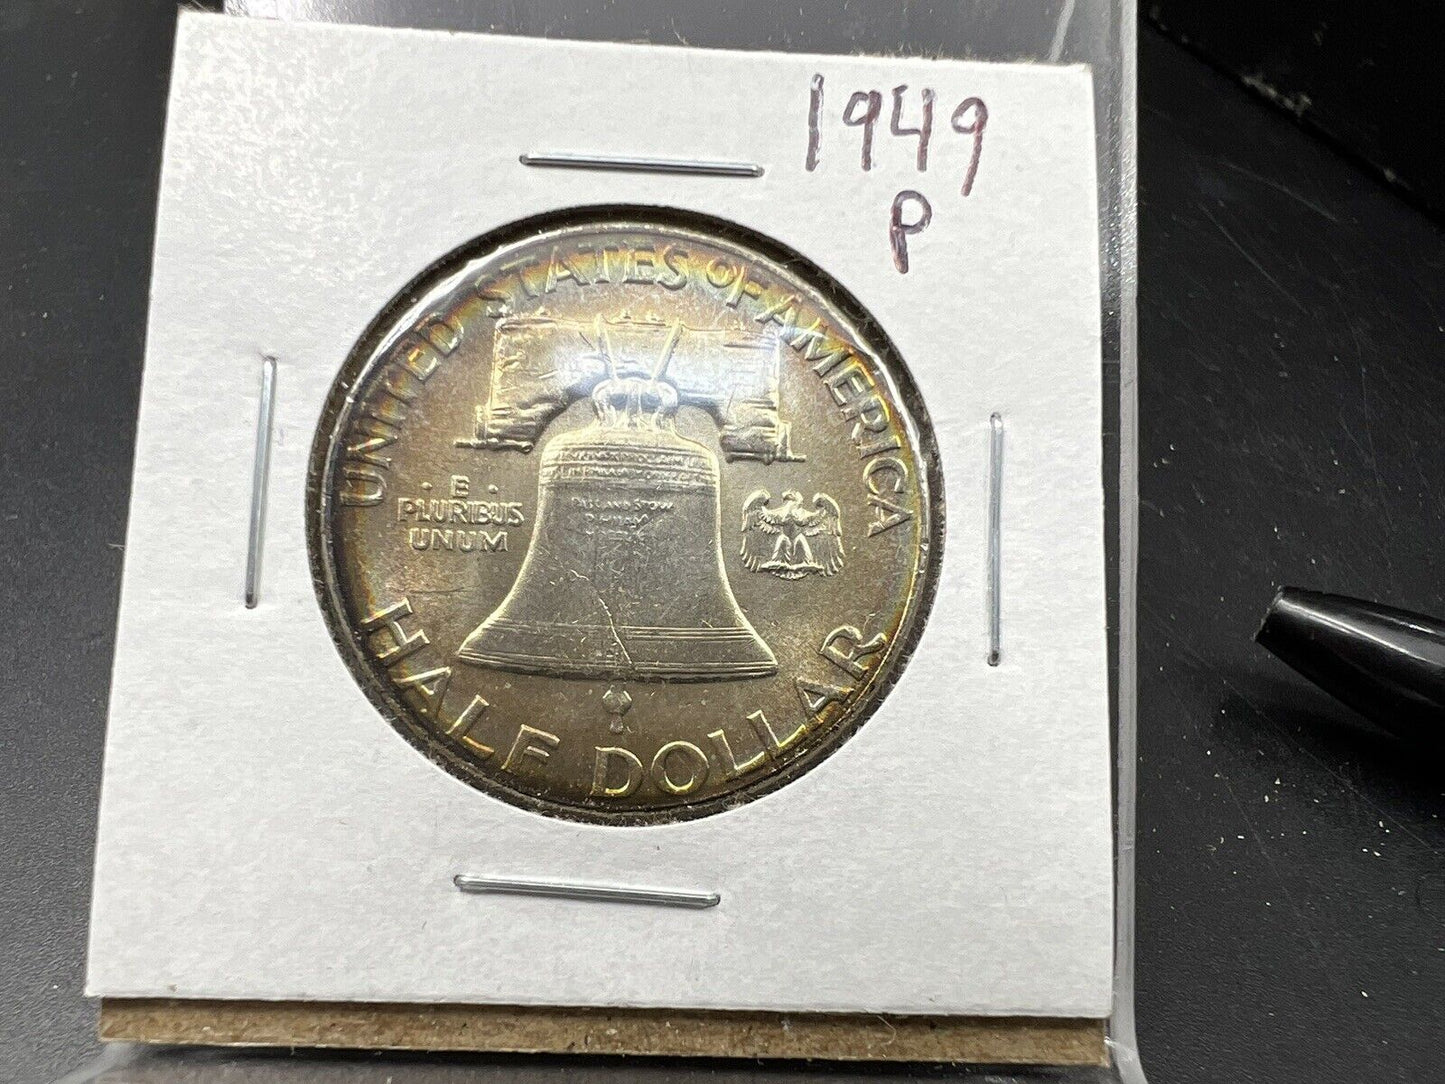 1949 P Franklin Silver Half Dollar Coin BU UNC FBL Full Bell Line PQ Toning REV